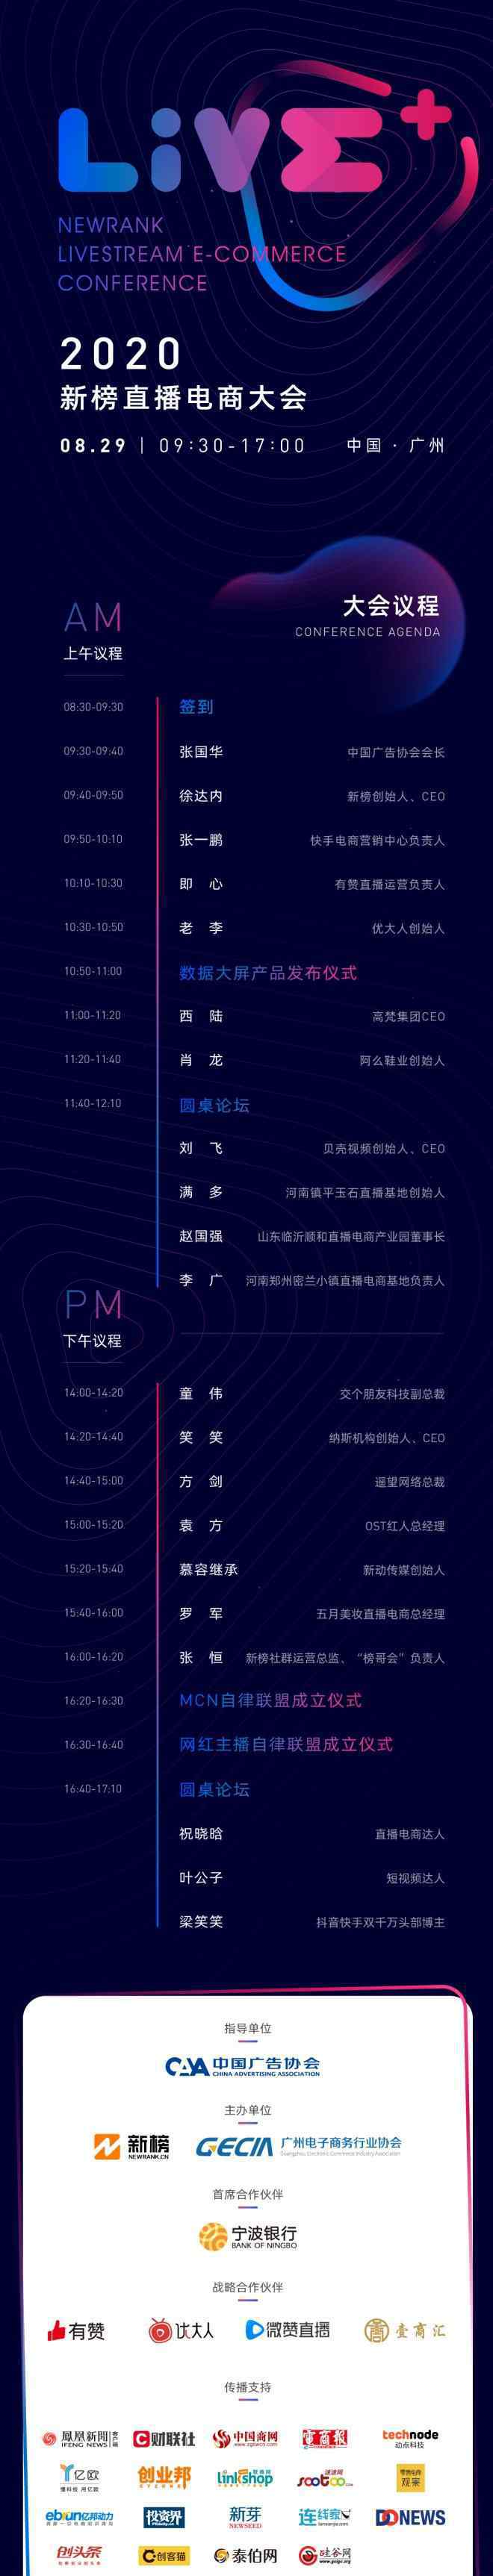 新榜官网 2020新榜直播电商大会将于8月29日在广州召开